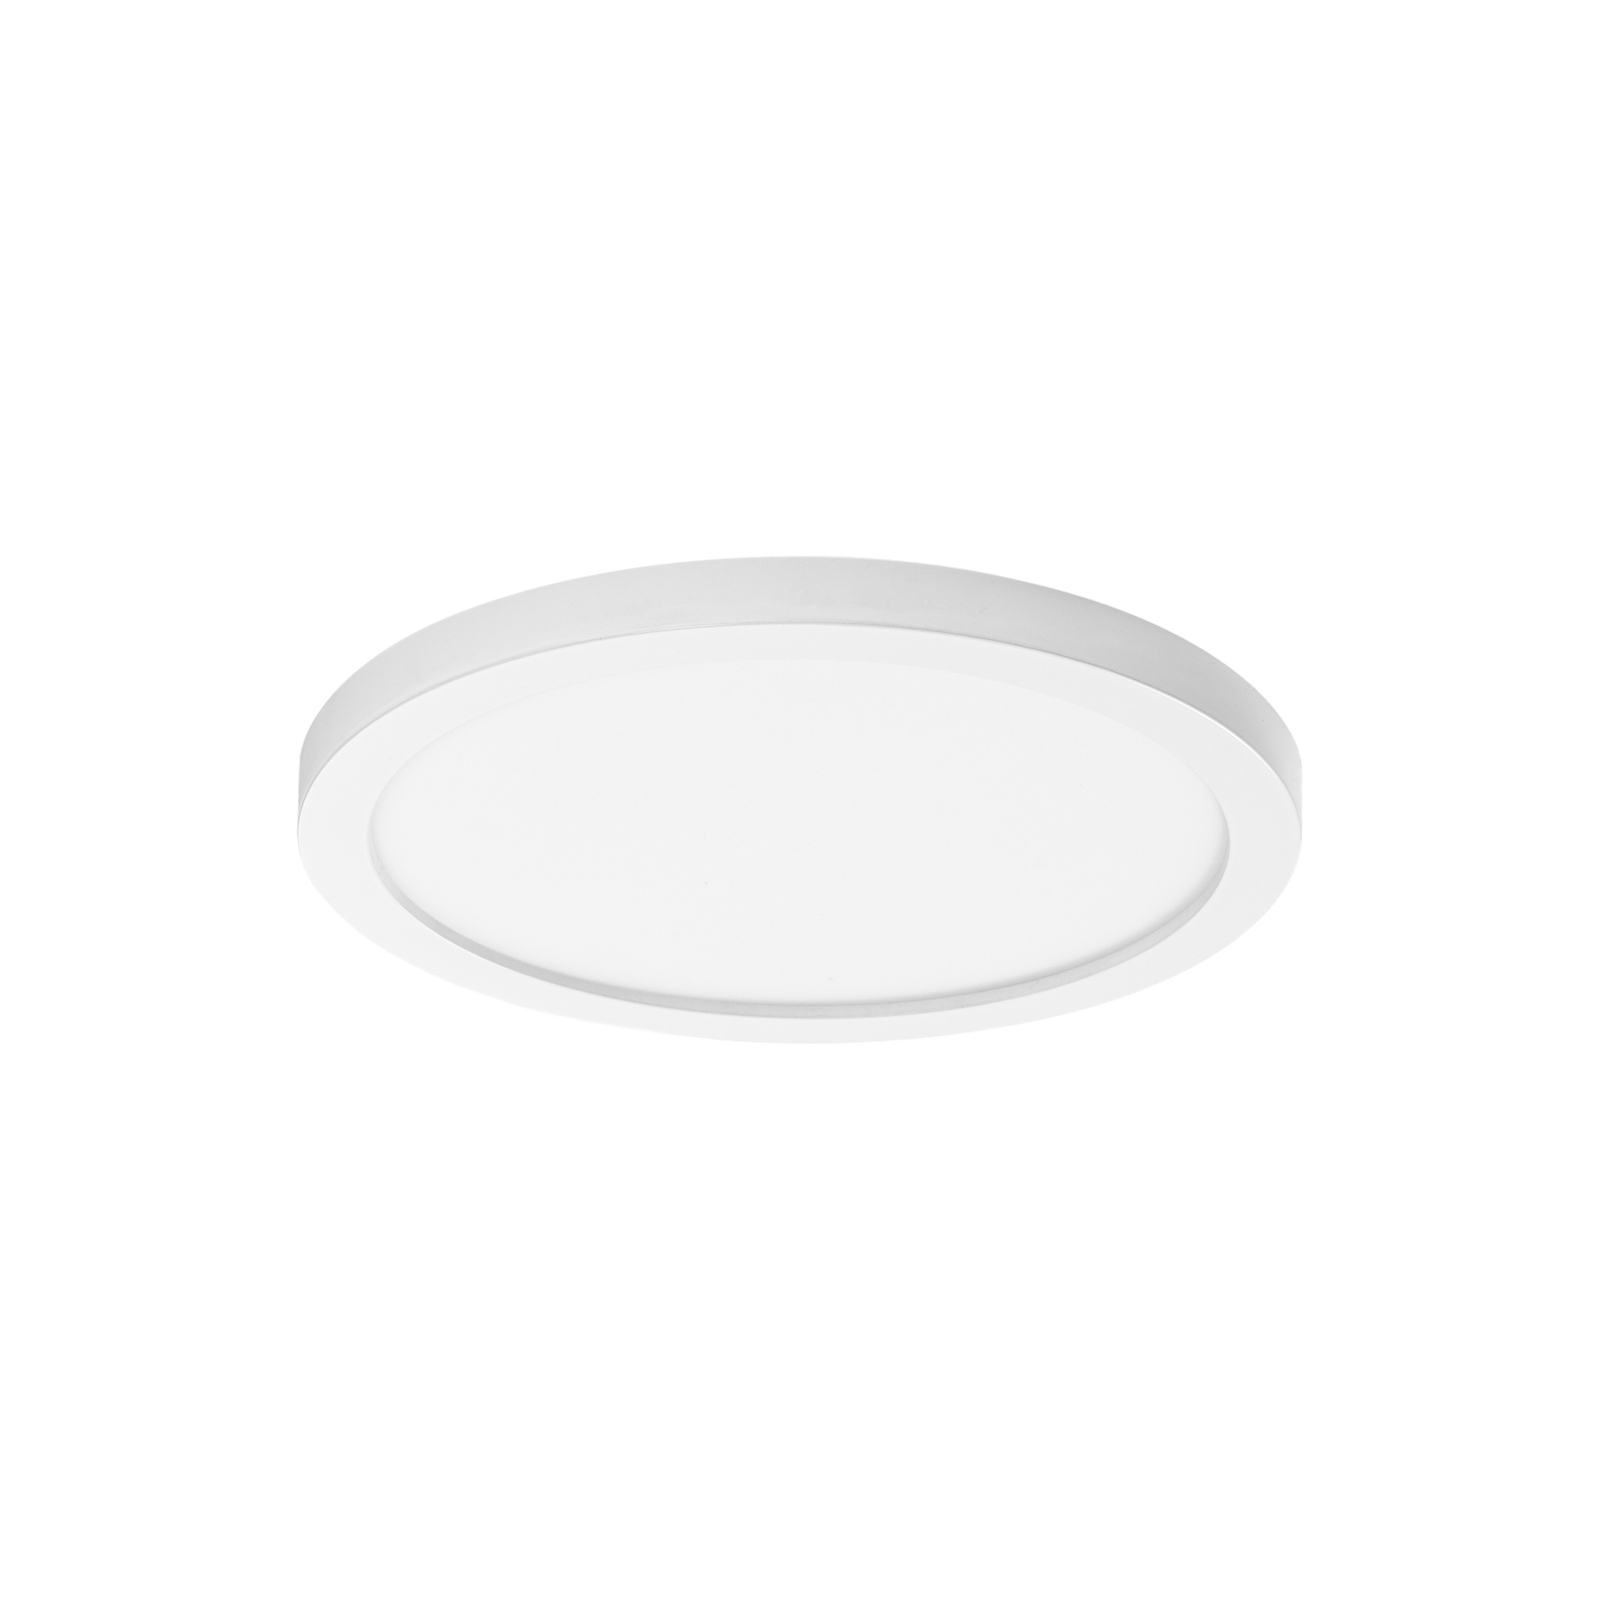 LED-Deckenleuchte Solvie, weiß, rund, Ø 30 cm